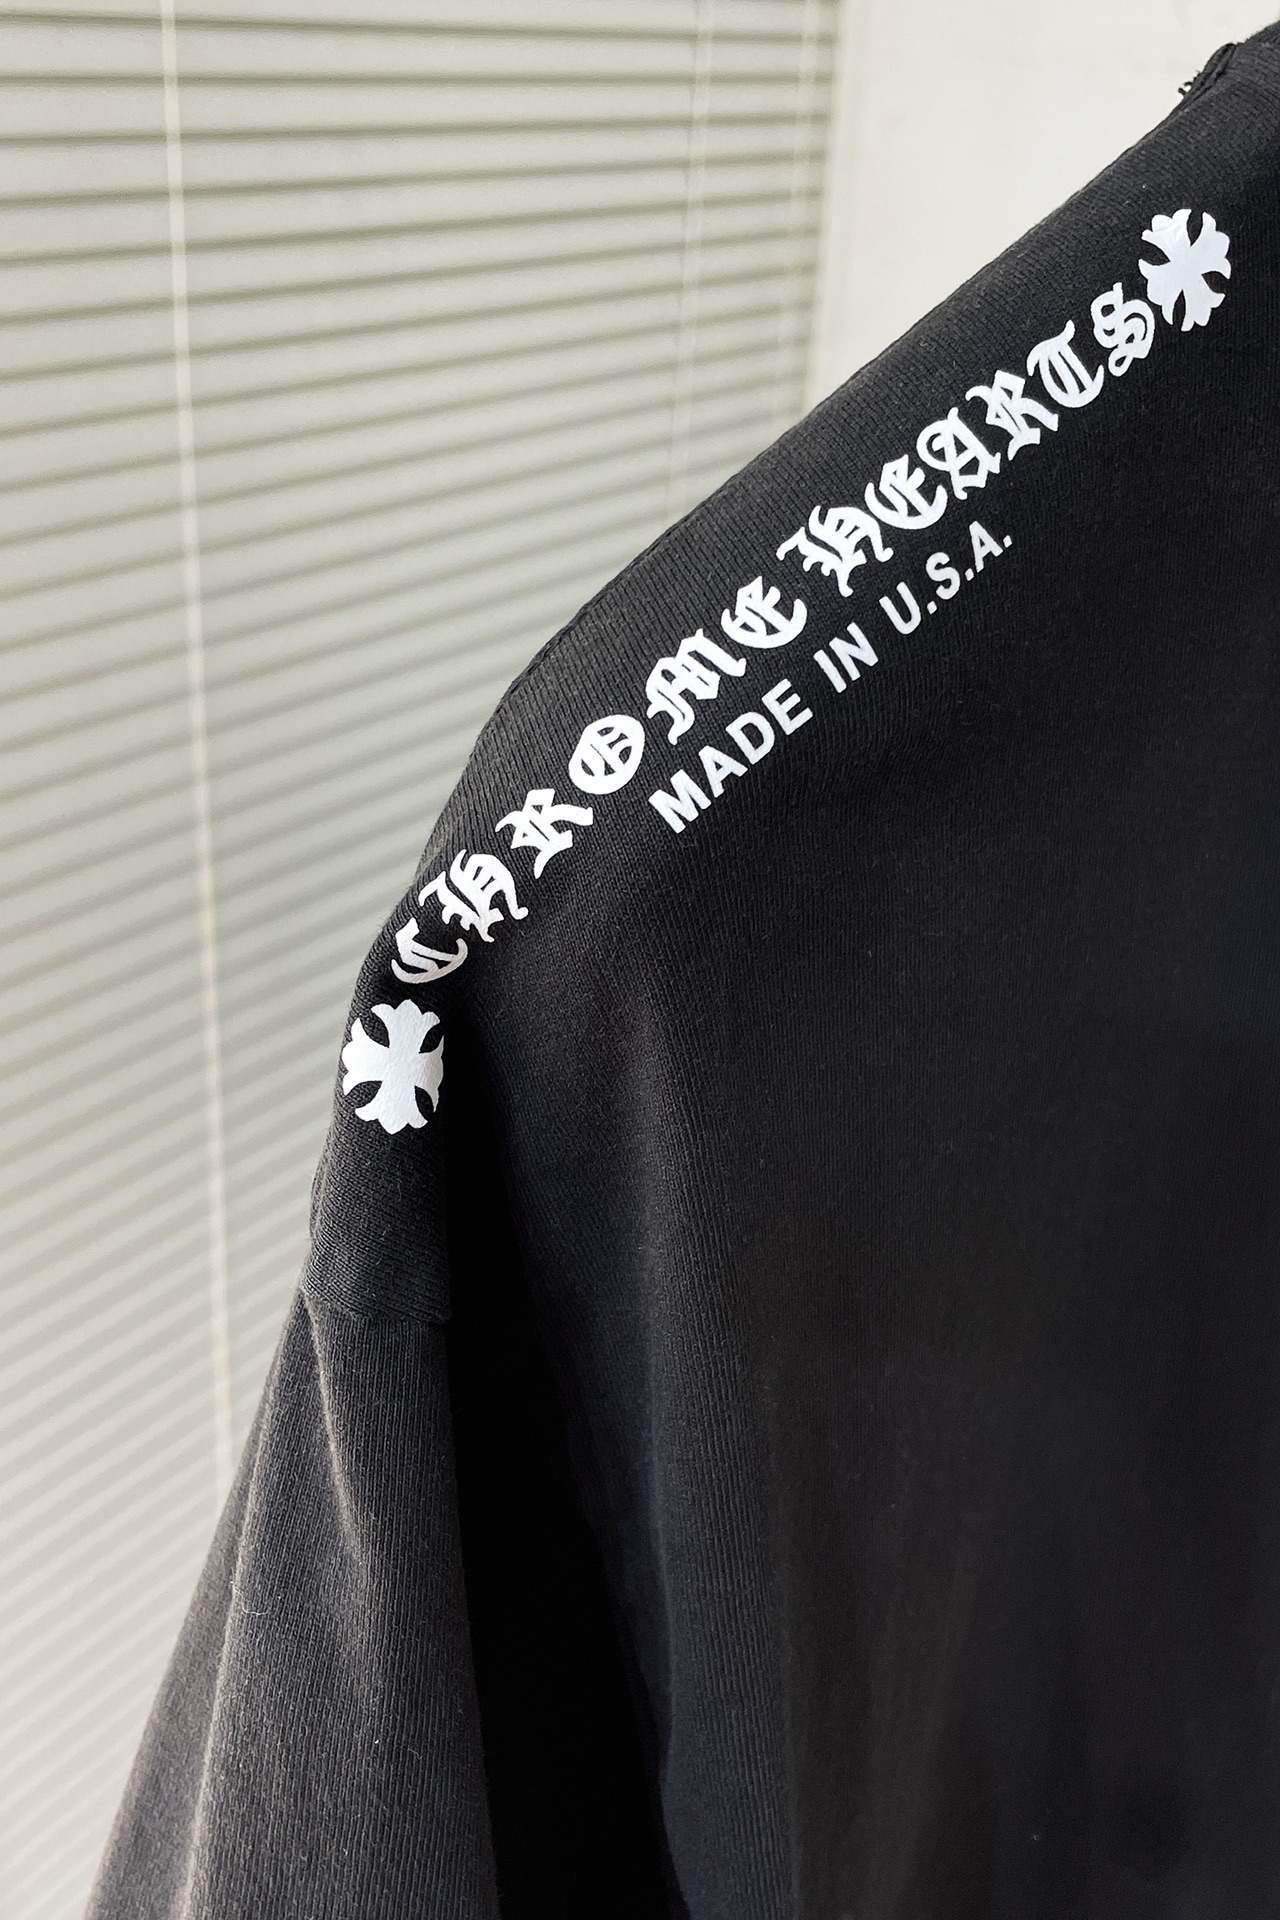 限定販売 クロムハーツtシャツ サイズ感スーパーコピー トップス 純綿 24新品 高級感 シンプル ブラック_5